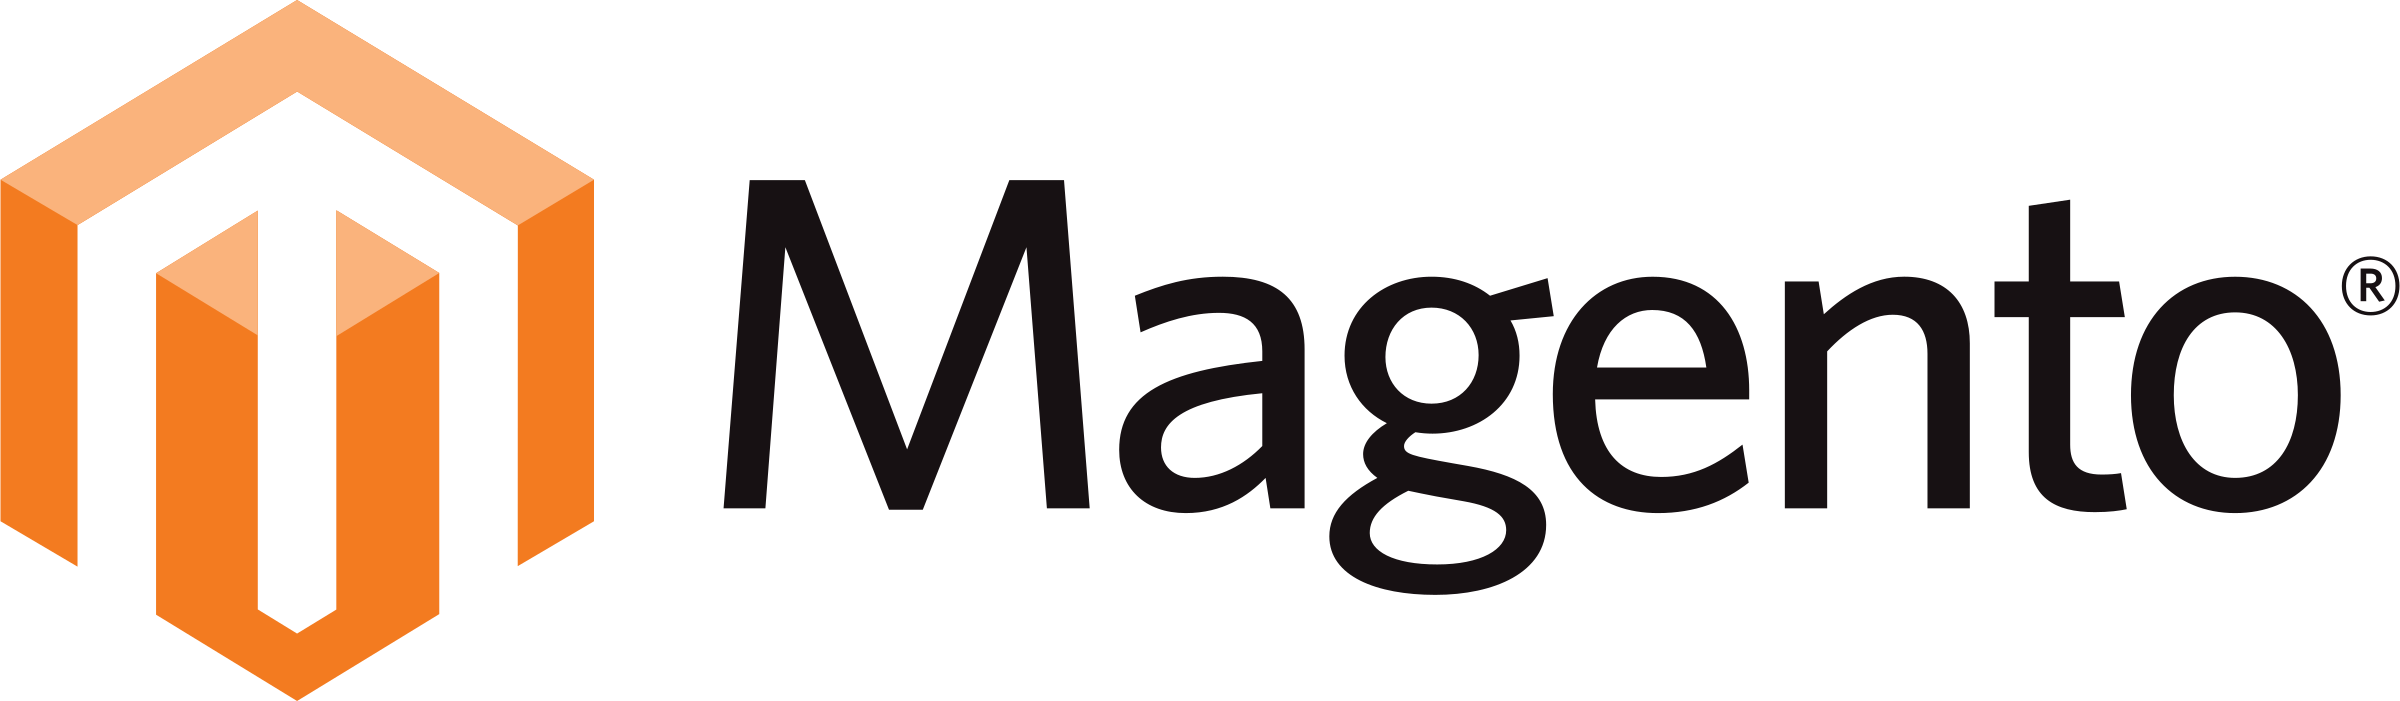 Magento logo software development